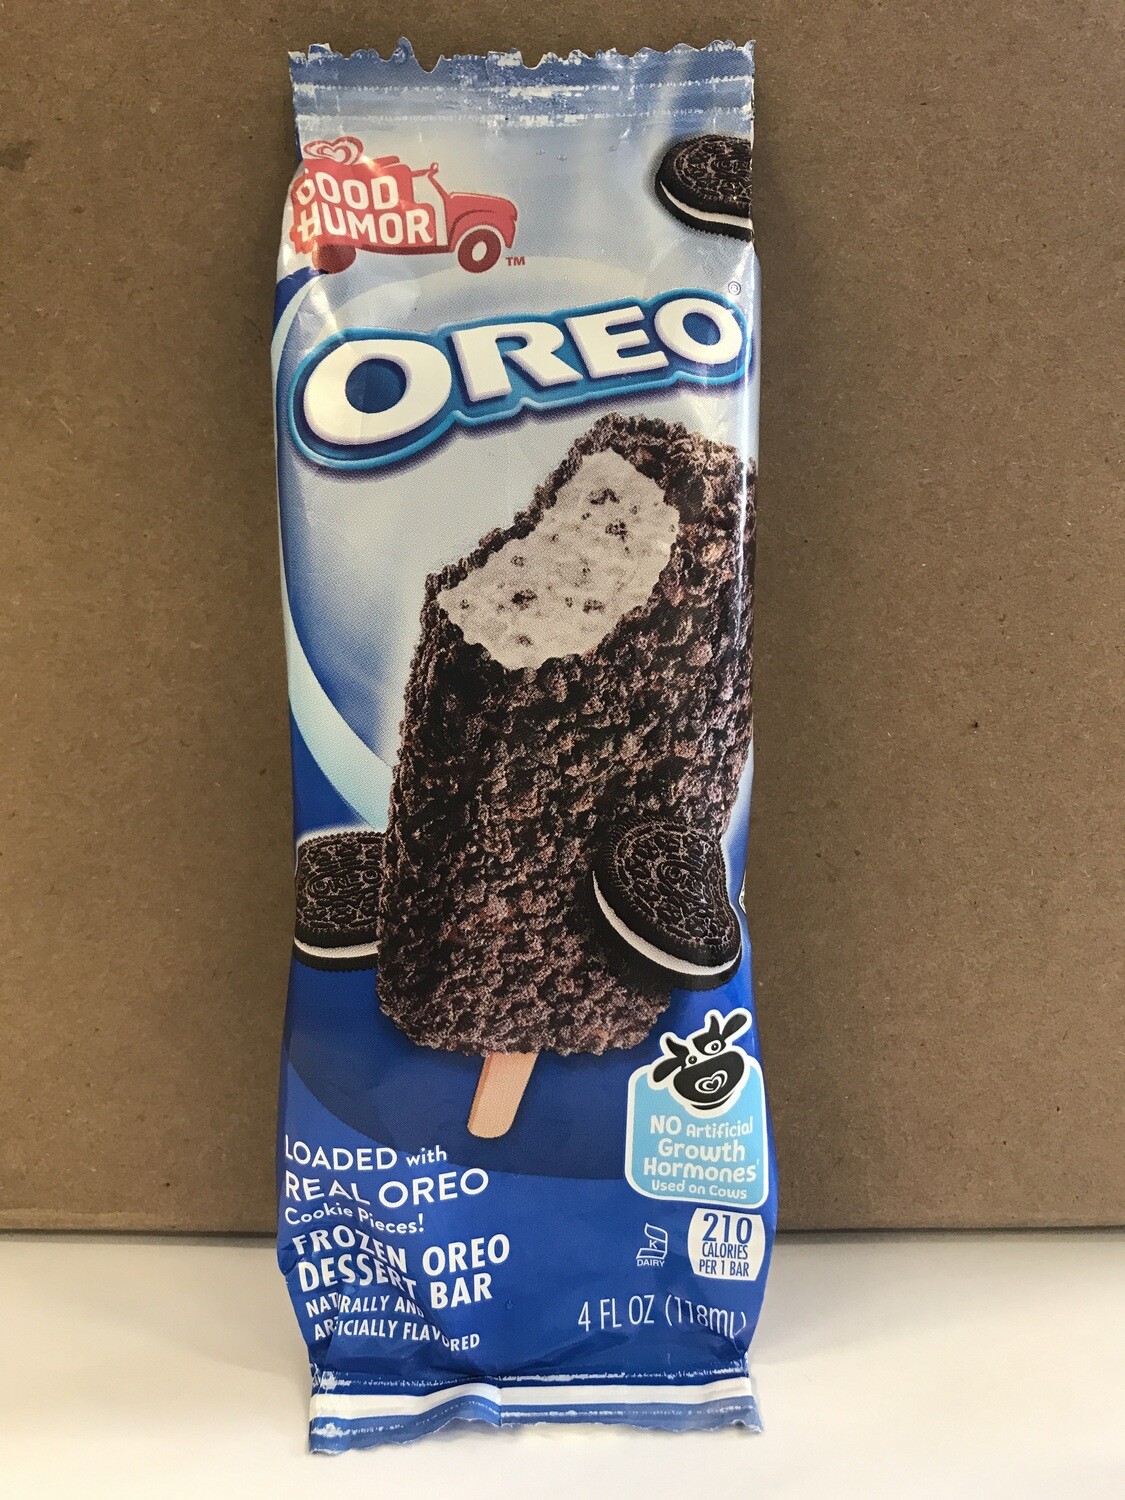 Frozen / Ice Cream Novelty / Oreo Ice Cream Bar